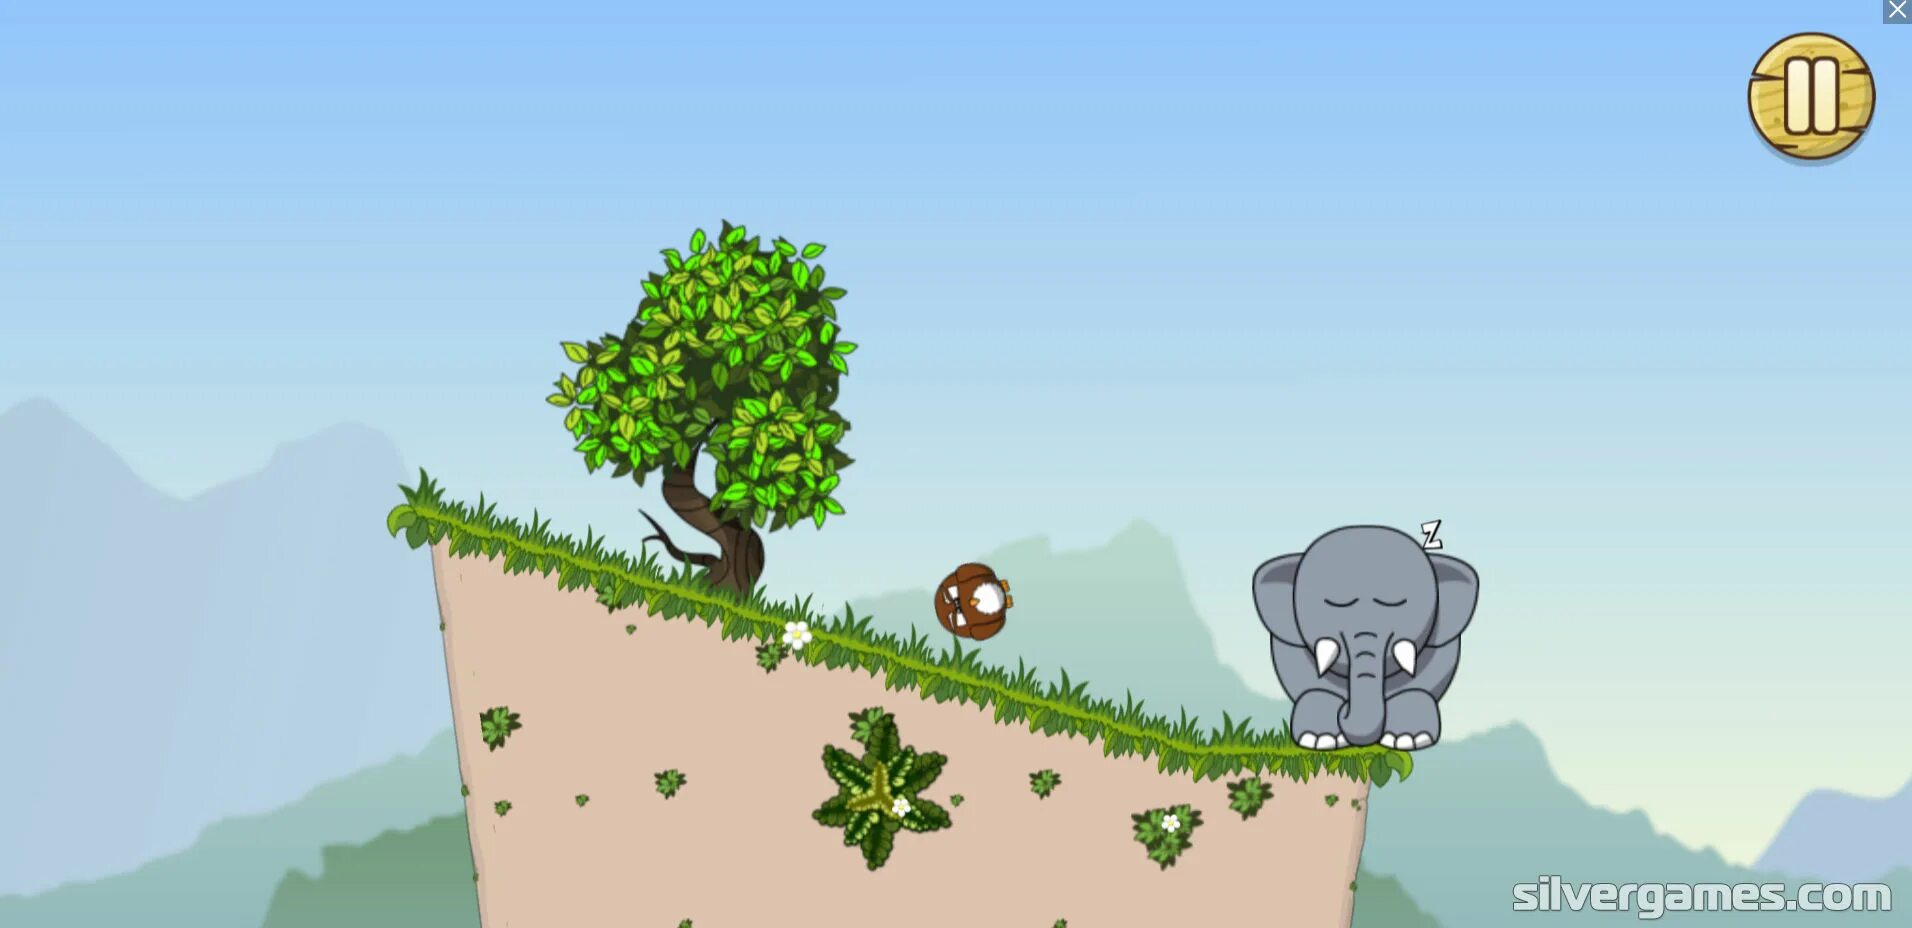 Игра "слон". Разбуди слона. Игры про слонов. Игра храпящий слон. Snoring elephant